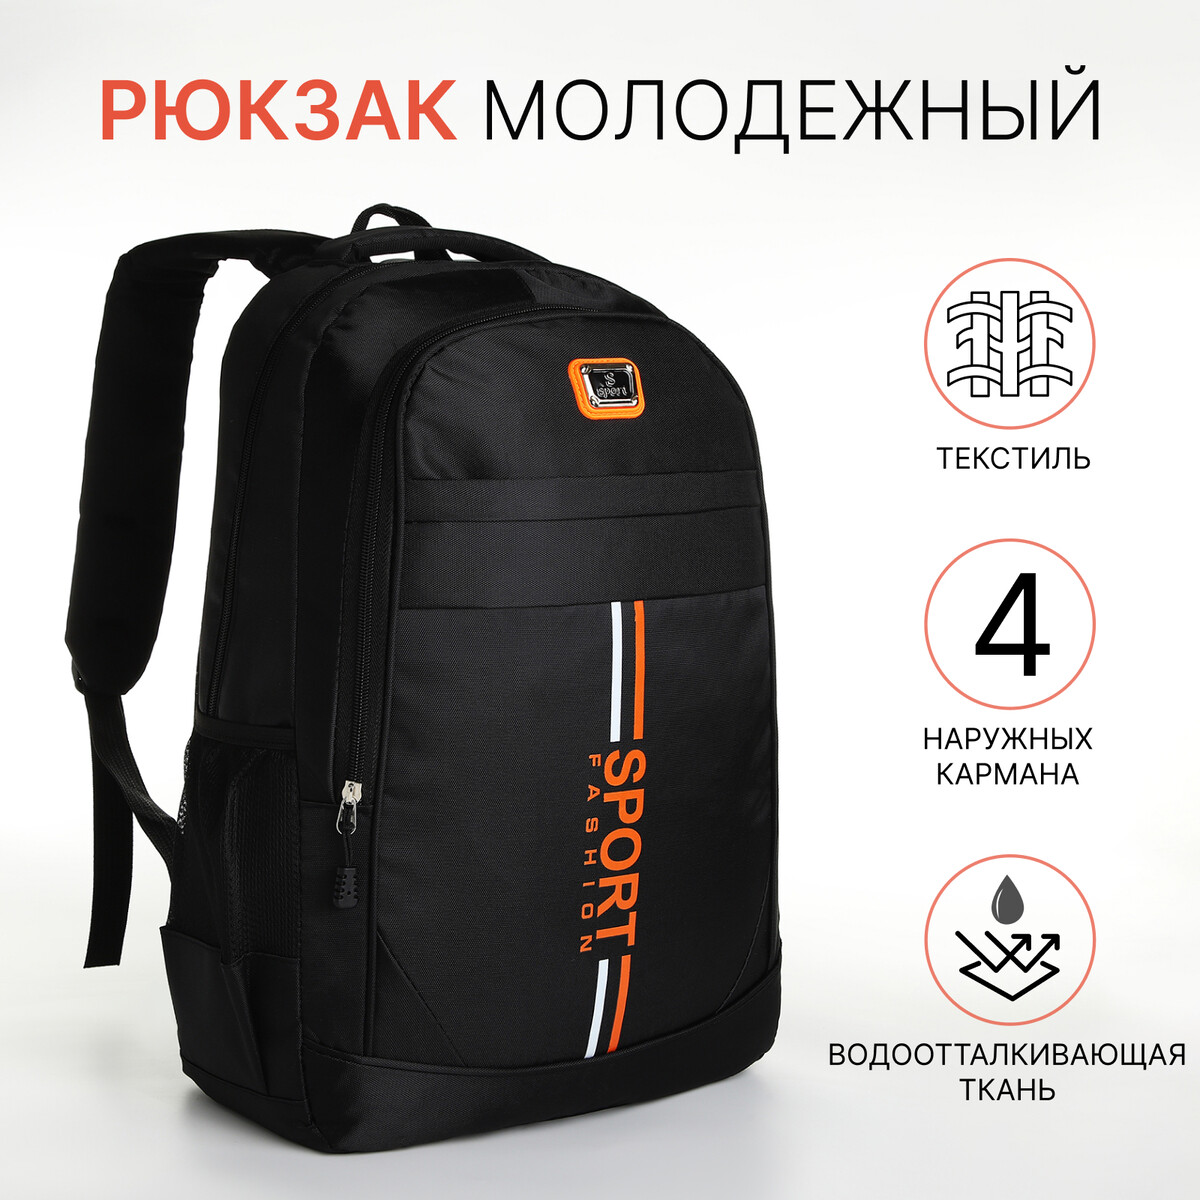 Рюкзак молодежный на молнии, 4 кармана, цвет черный/оранжевый pixel bag рюкзак с led дисплеем pixel plus orange оранжевый